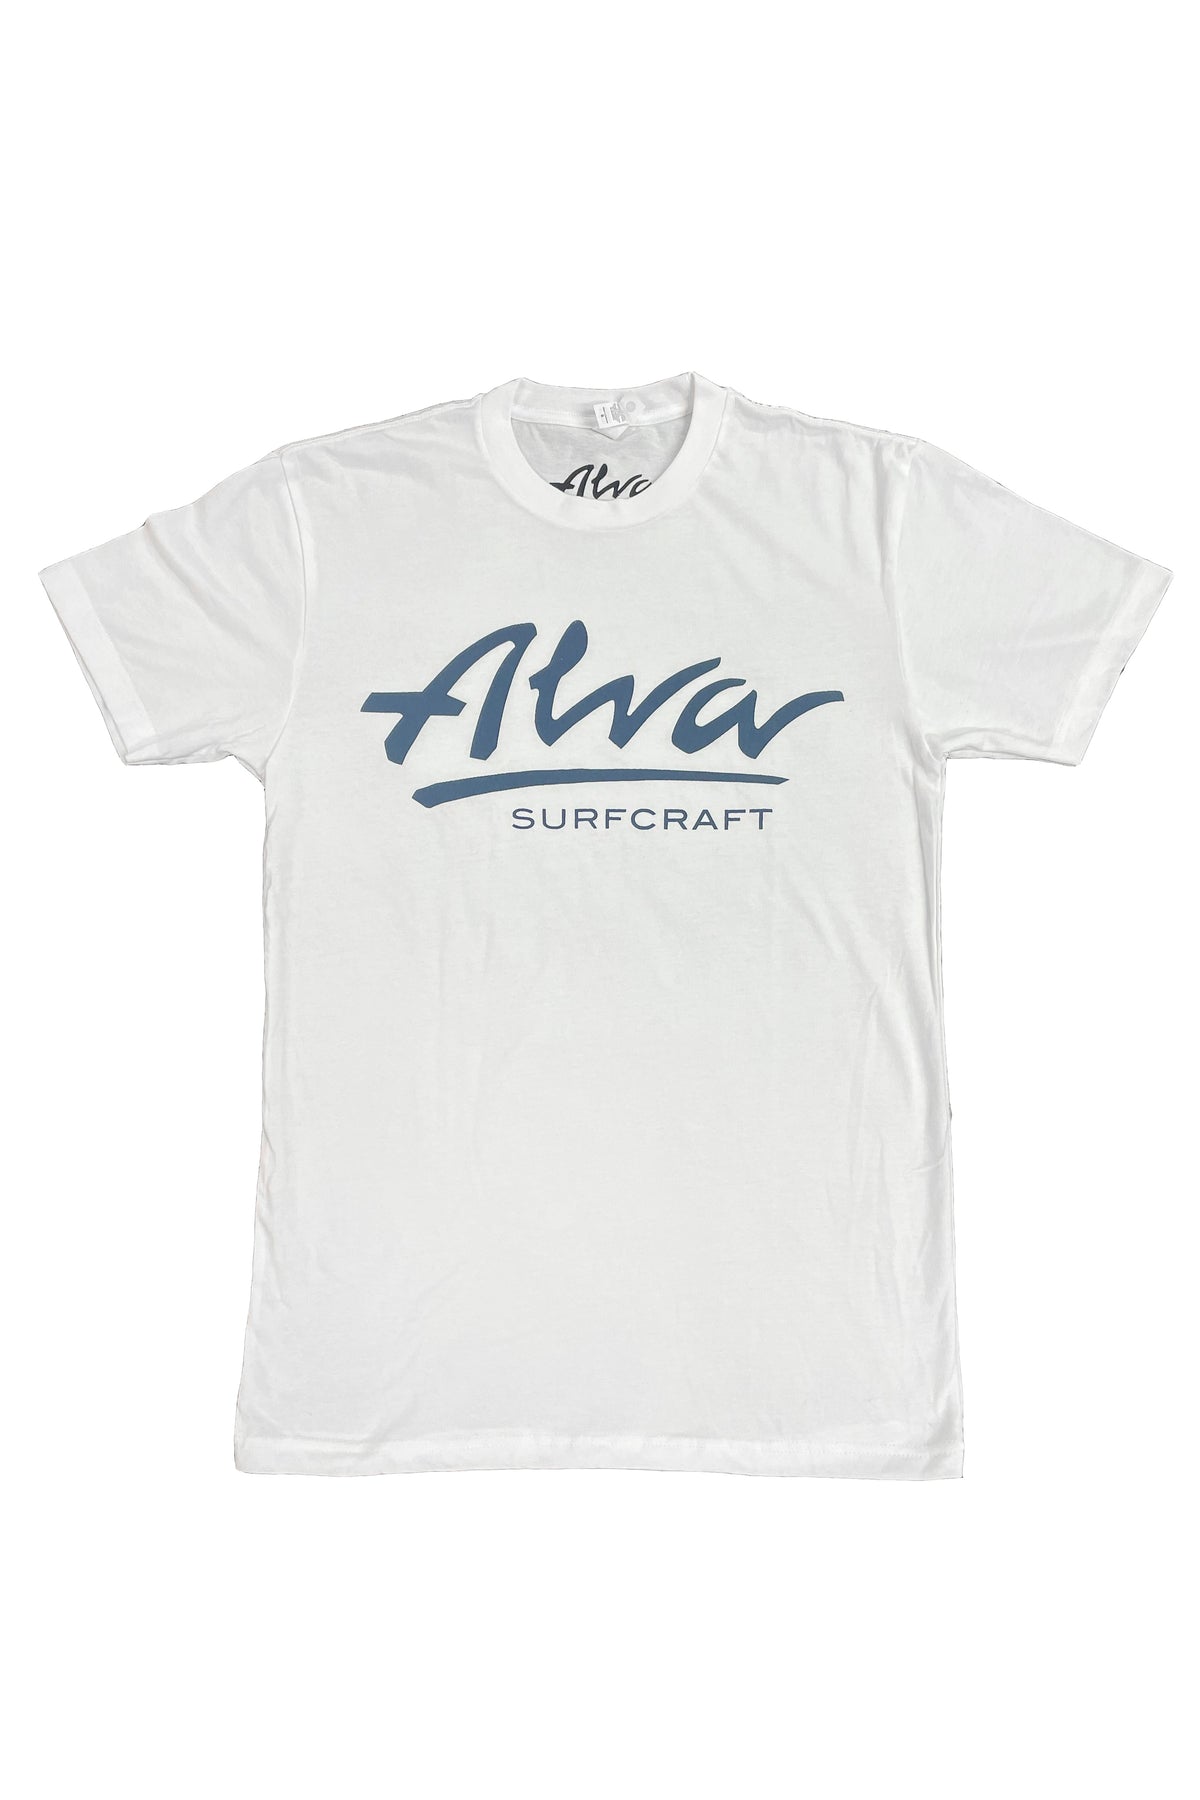 ALVA SURFCRAFT BLUE LOGO T-SHIRT